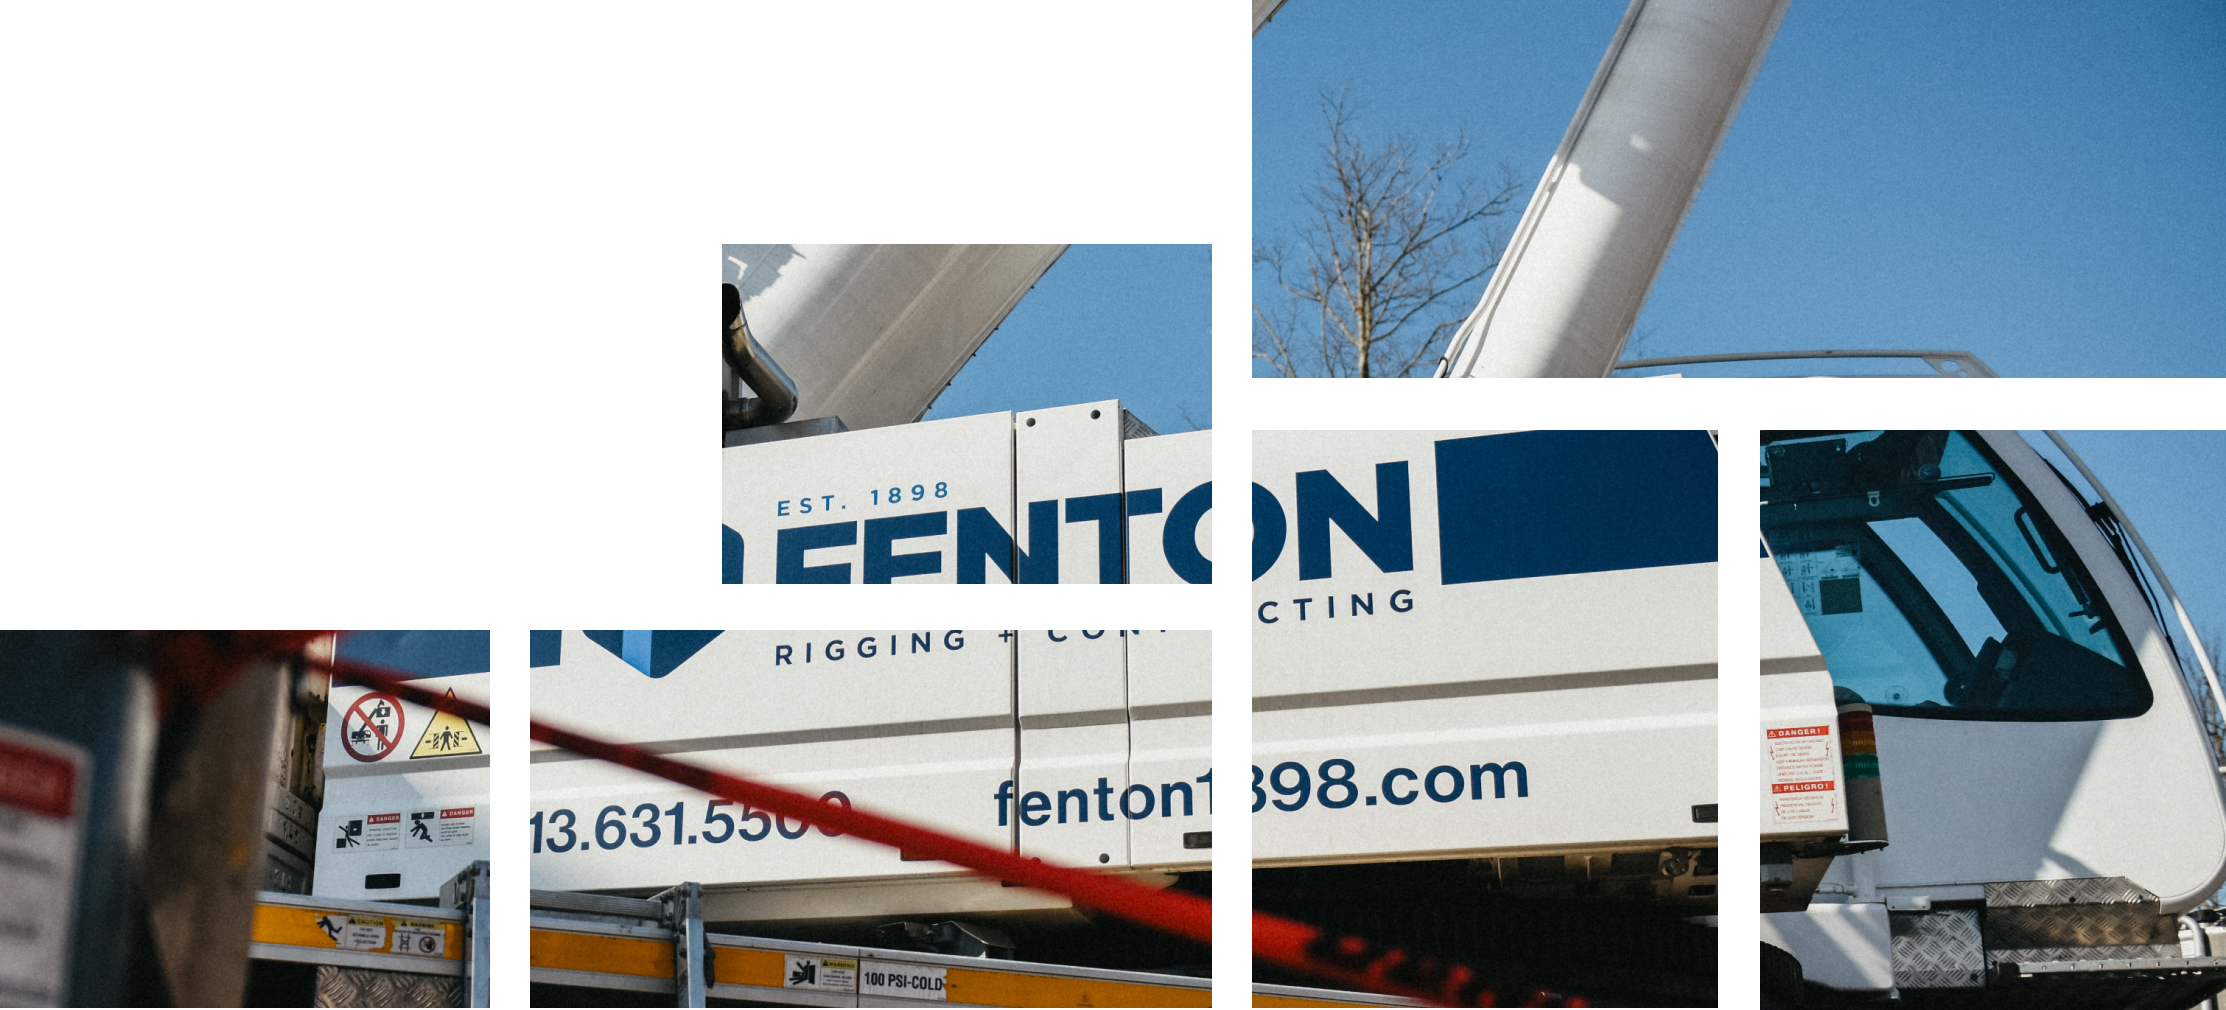 Fenton Rigging Cincinnati Ohio